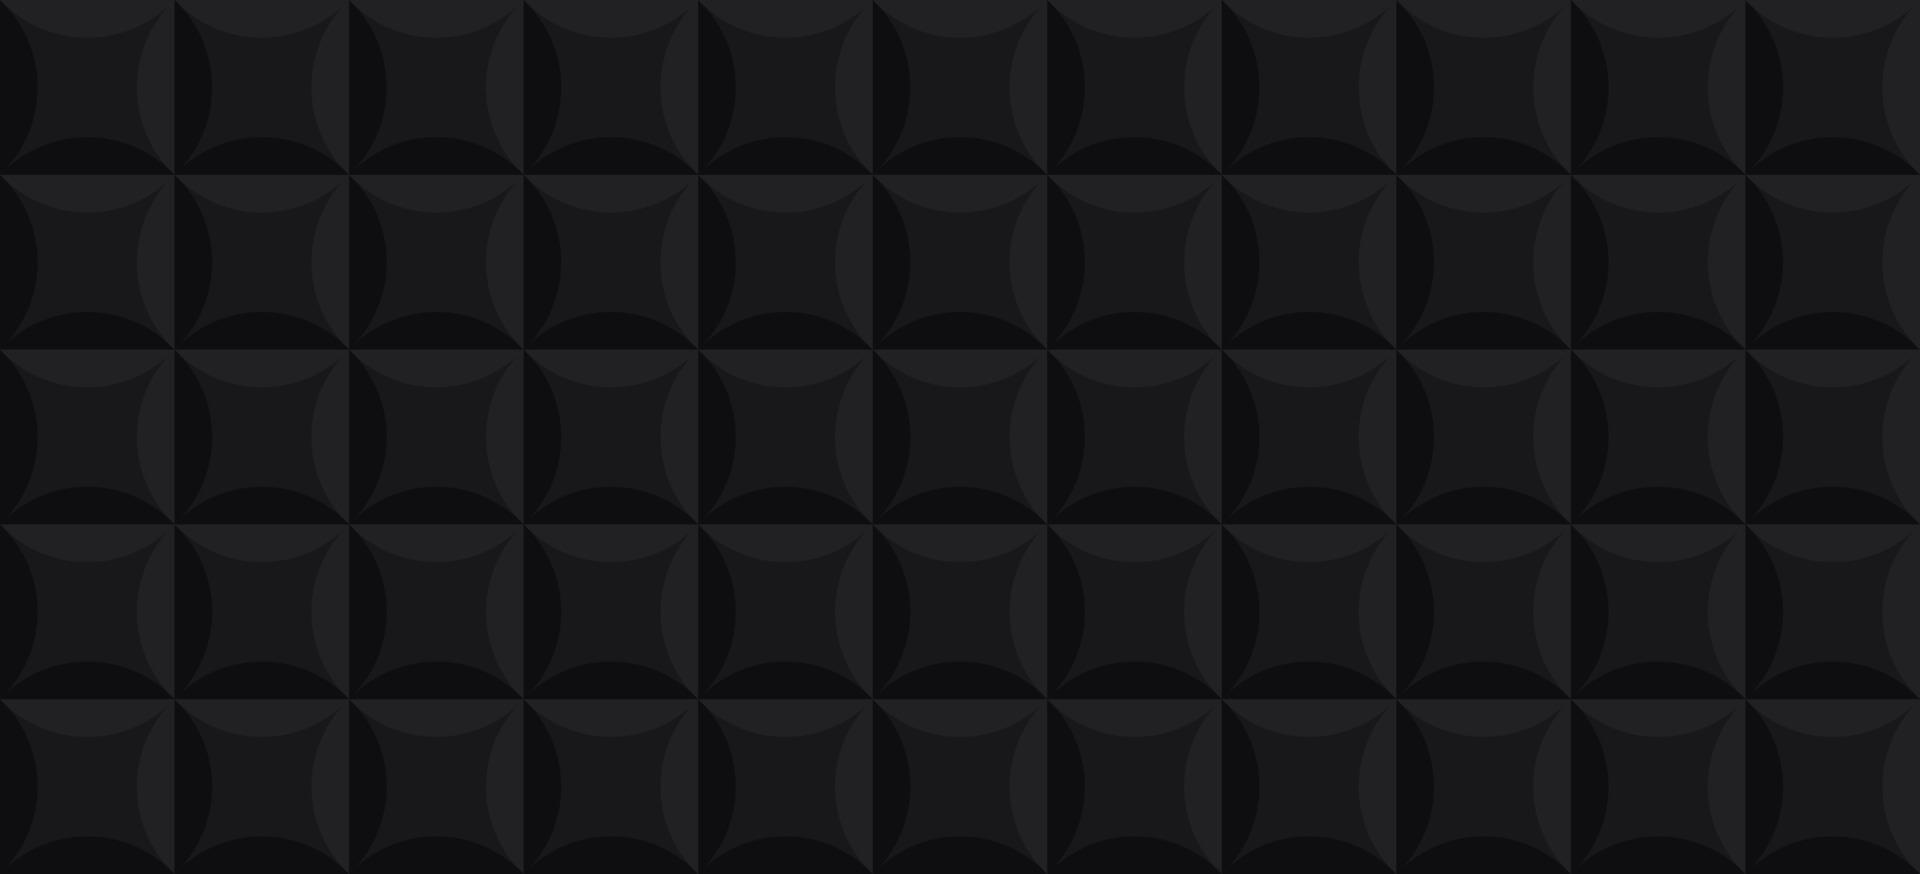 motif vintage sellerie cuir noir. tuile géométrique fond 3d noir. modèle de surface géométrique. texture de carreaux carrés simples pour la décoration intérieure. conception de papier peint abstrait. illustration vectorielle. vecteur